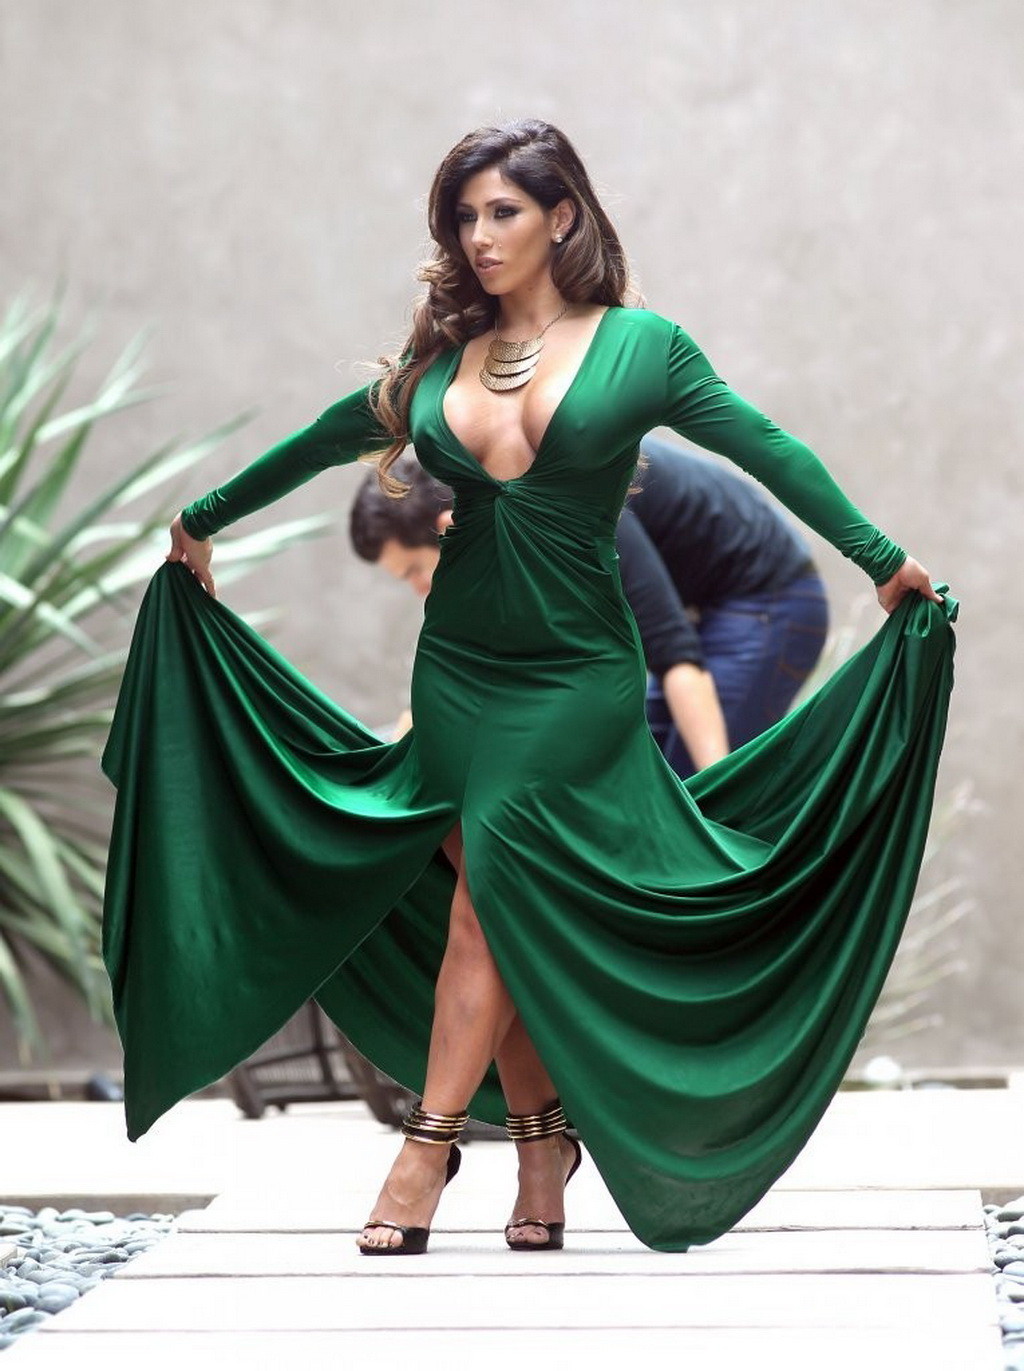 カルメン・オルテガが写真展でグリーンのドレスを着てスカートをめくり、大きな胸の谷間を見せる
 #75228815